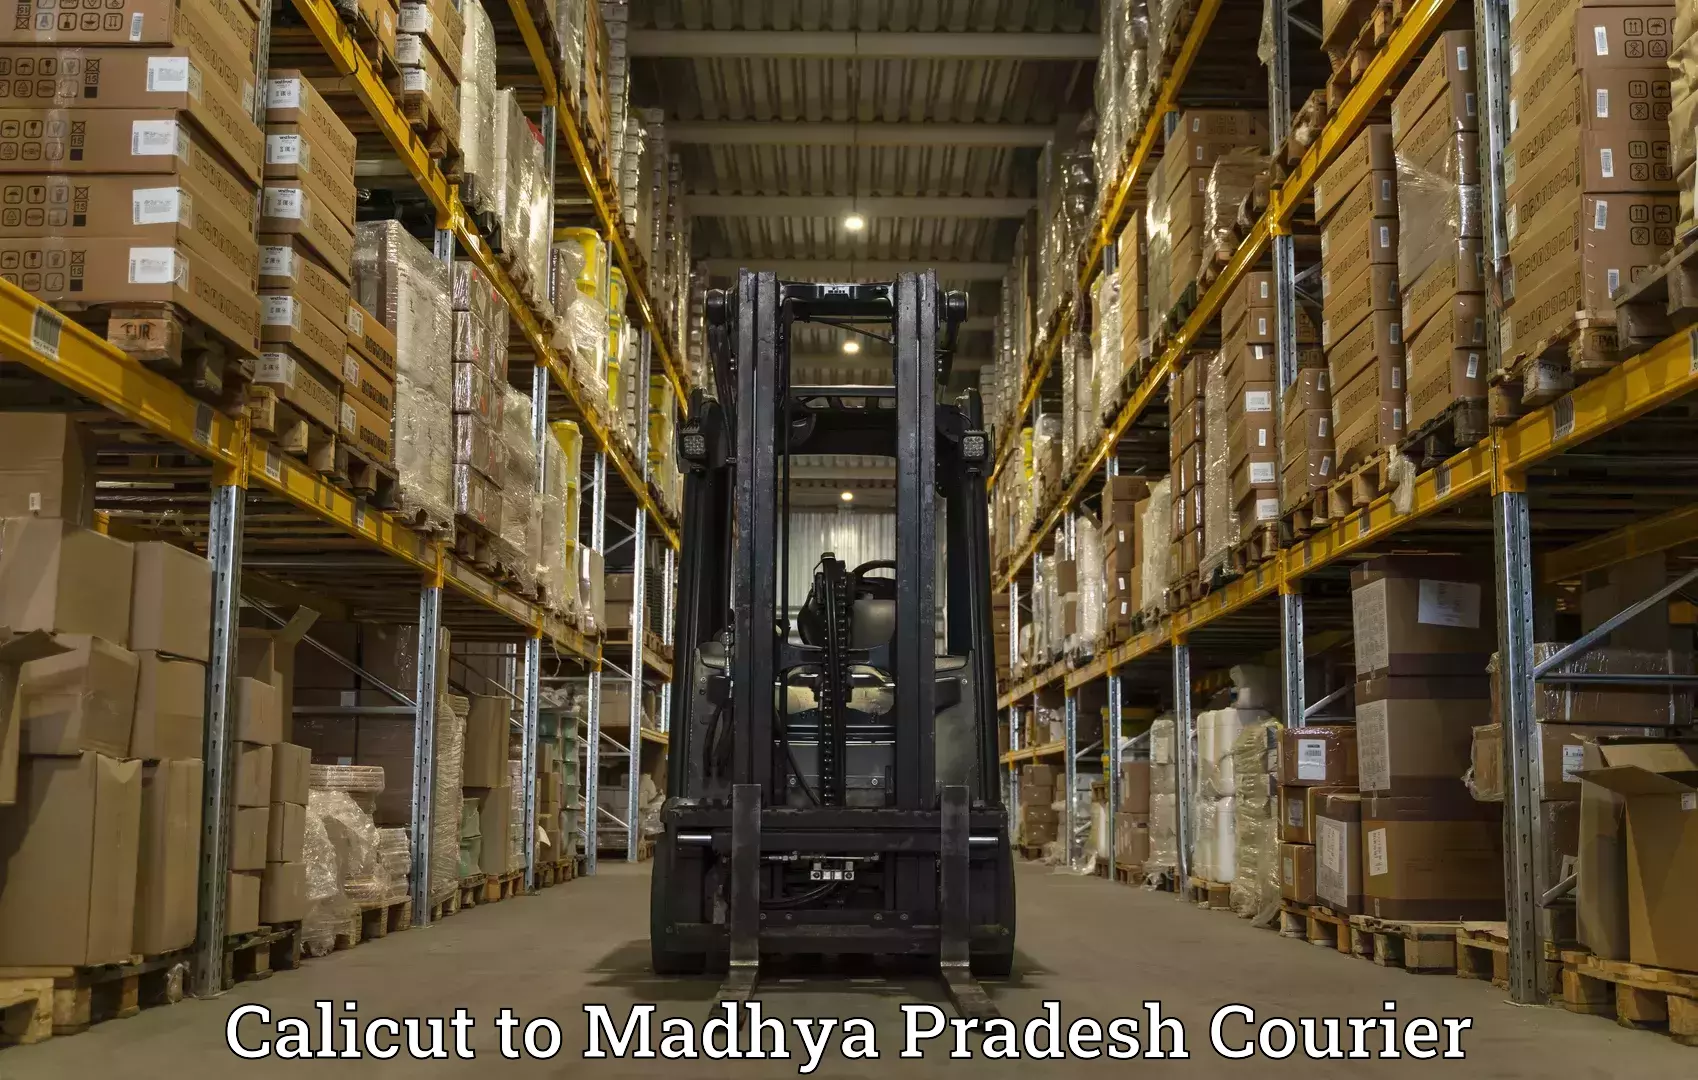 Customer-centric shipping Calicut to Ujjain